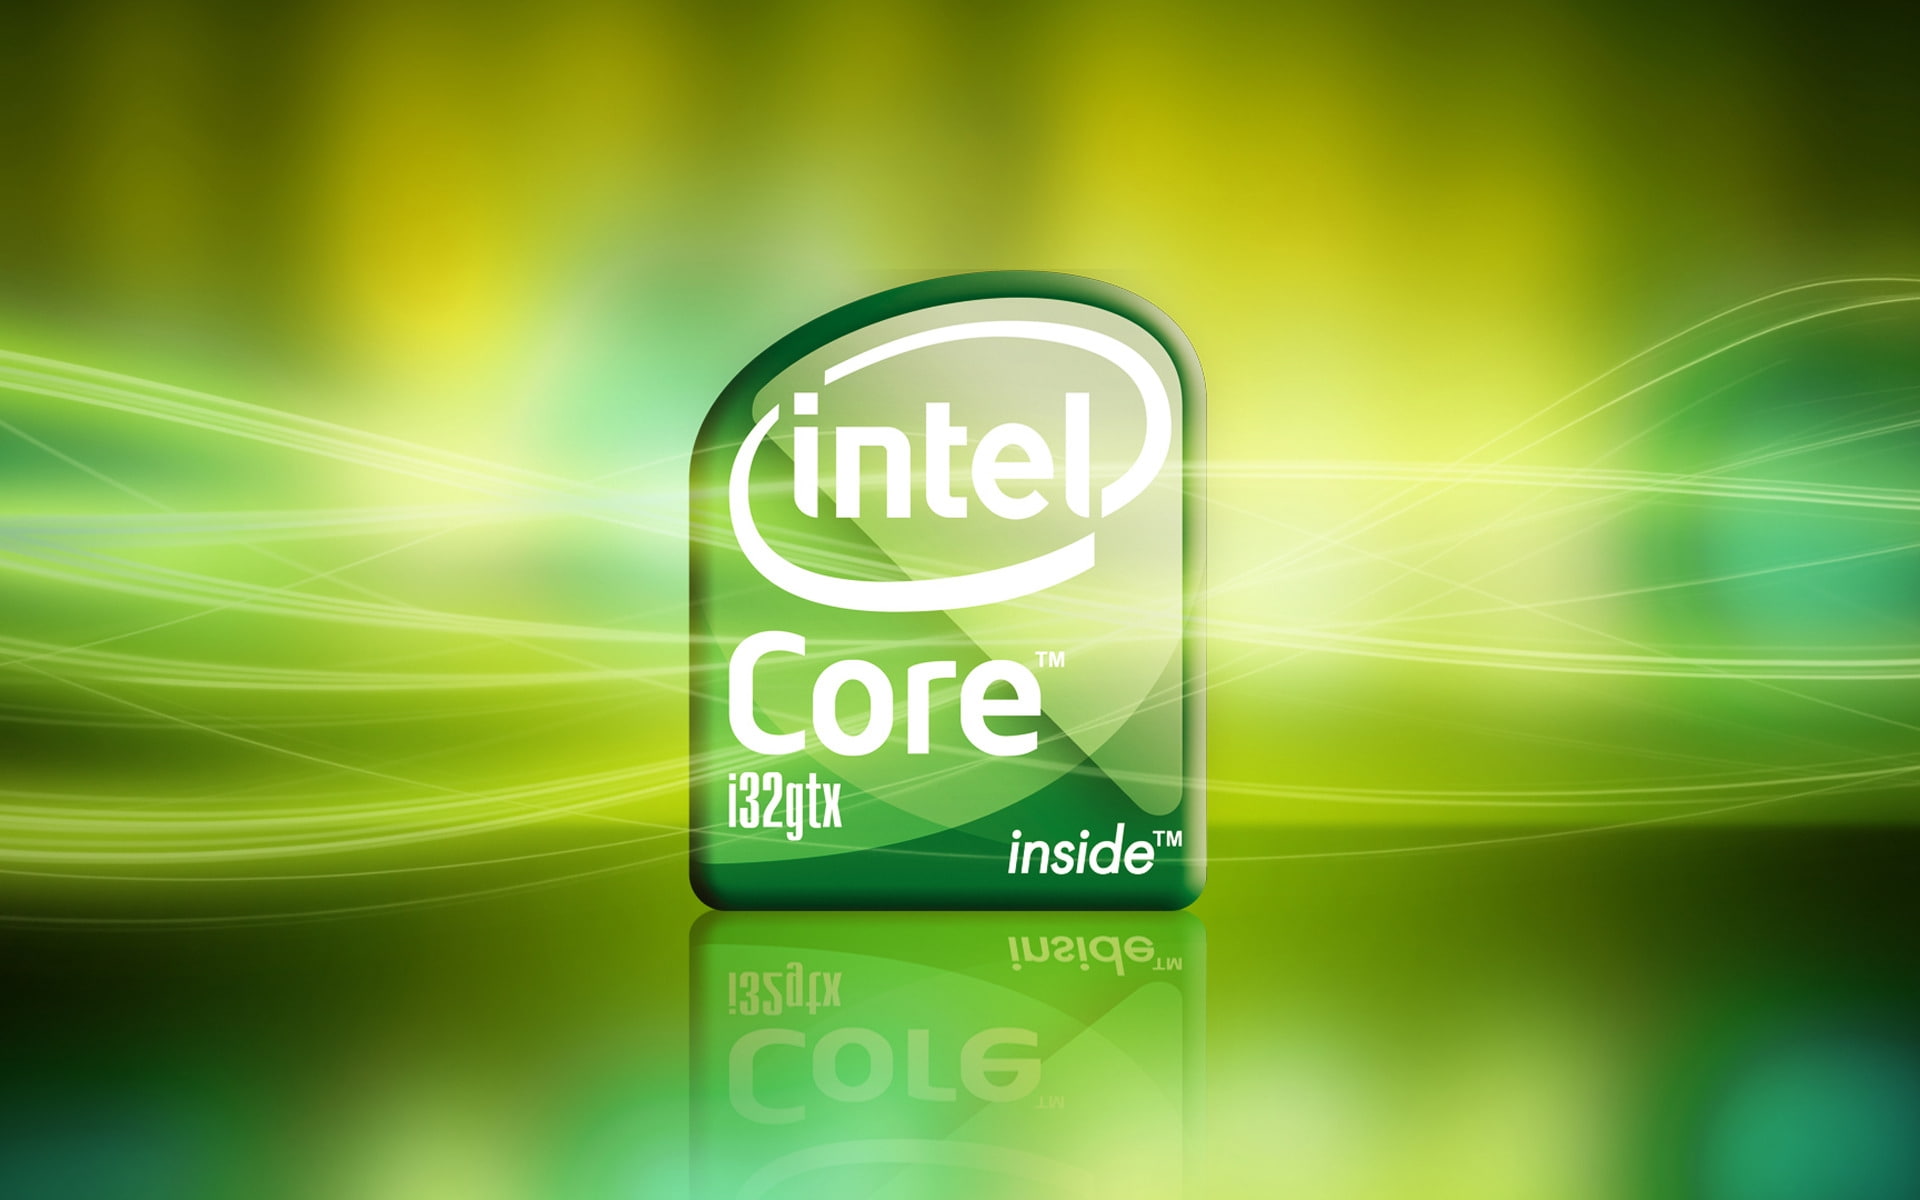 Intel Core I5 Wallpaper Hd - HD Wallpaper 